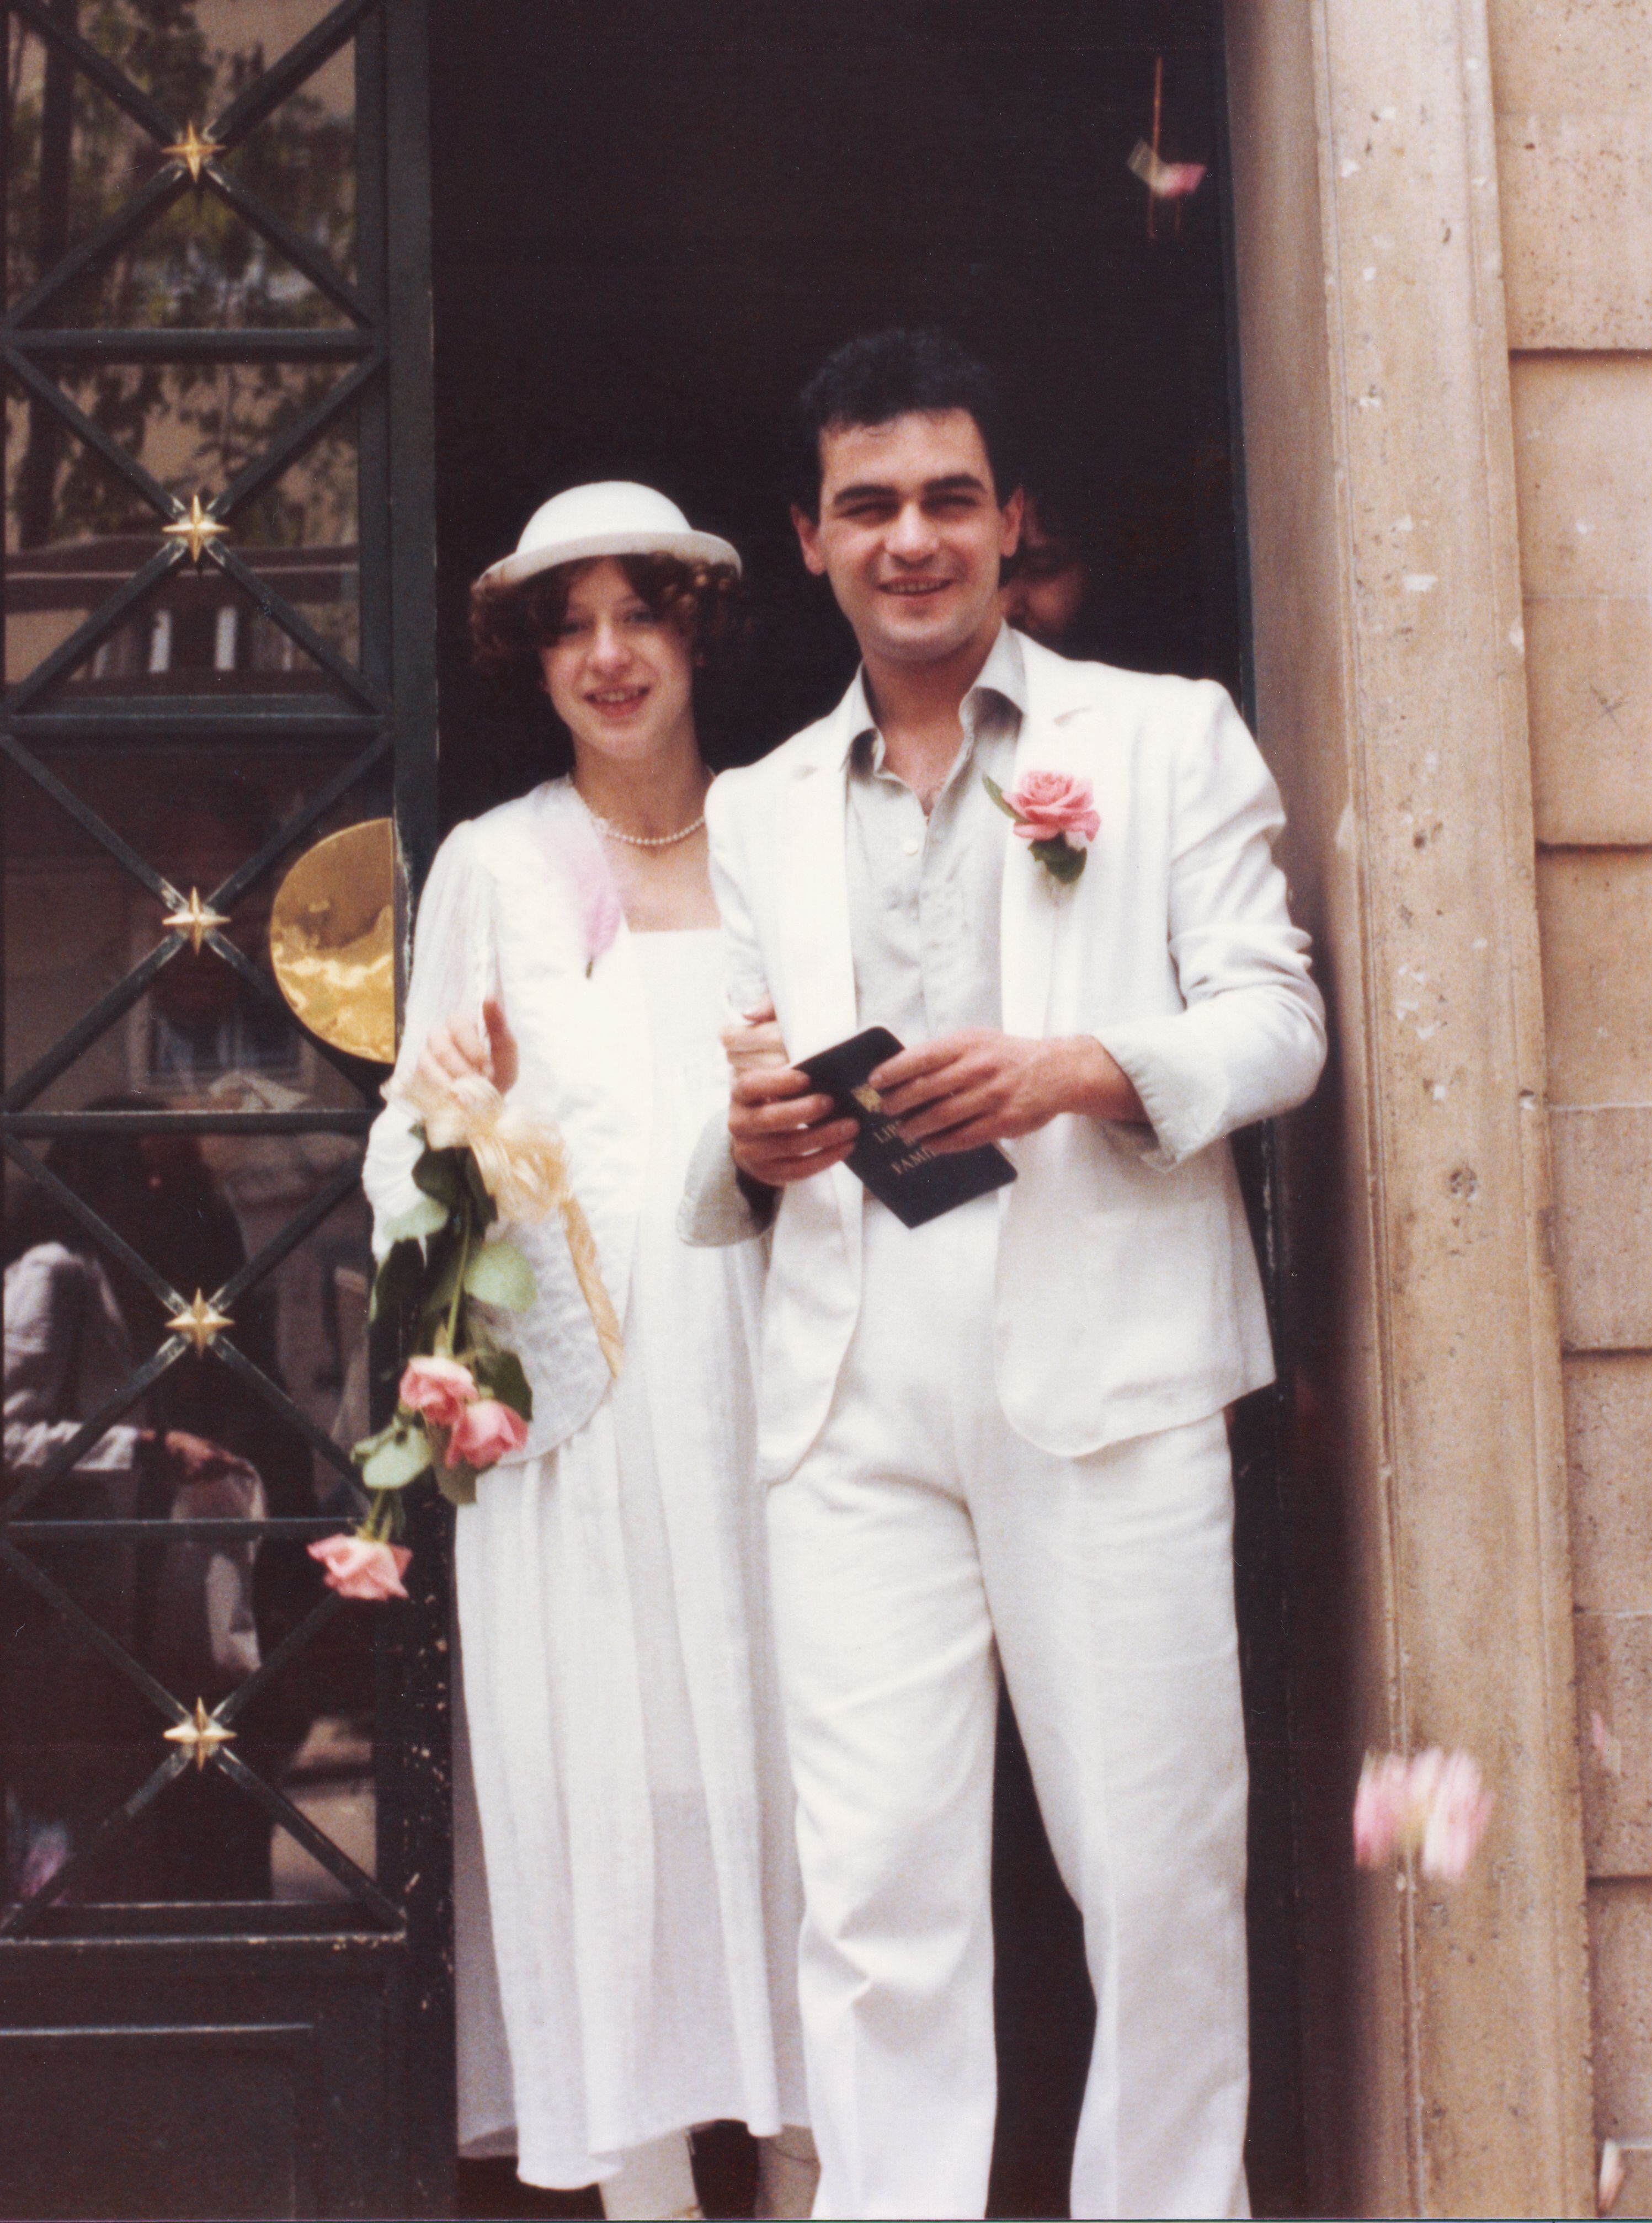 La boda de Esther González y Toño Martín, en mayo de 1980, en Madrid, en una imagen de su álbum familiar. 